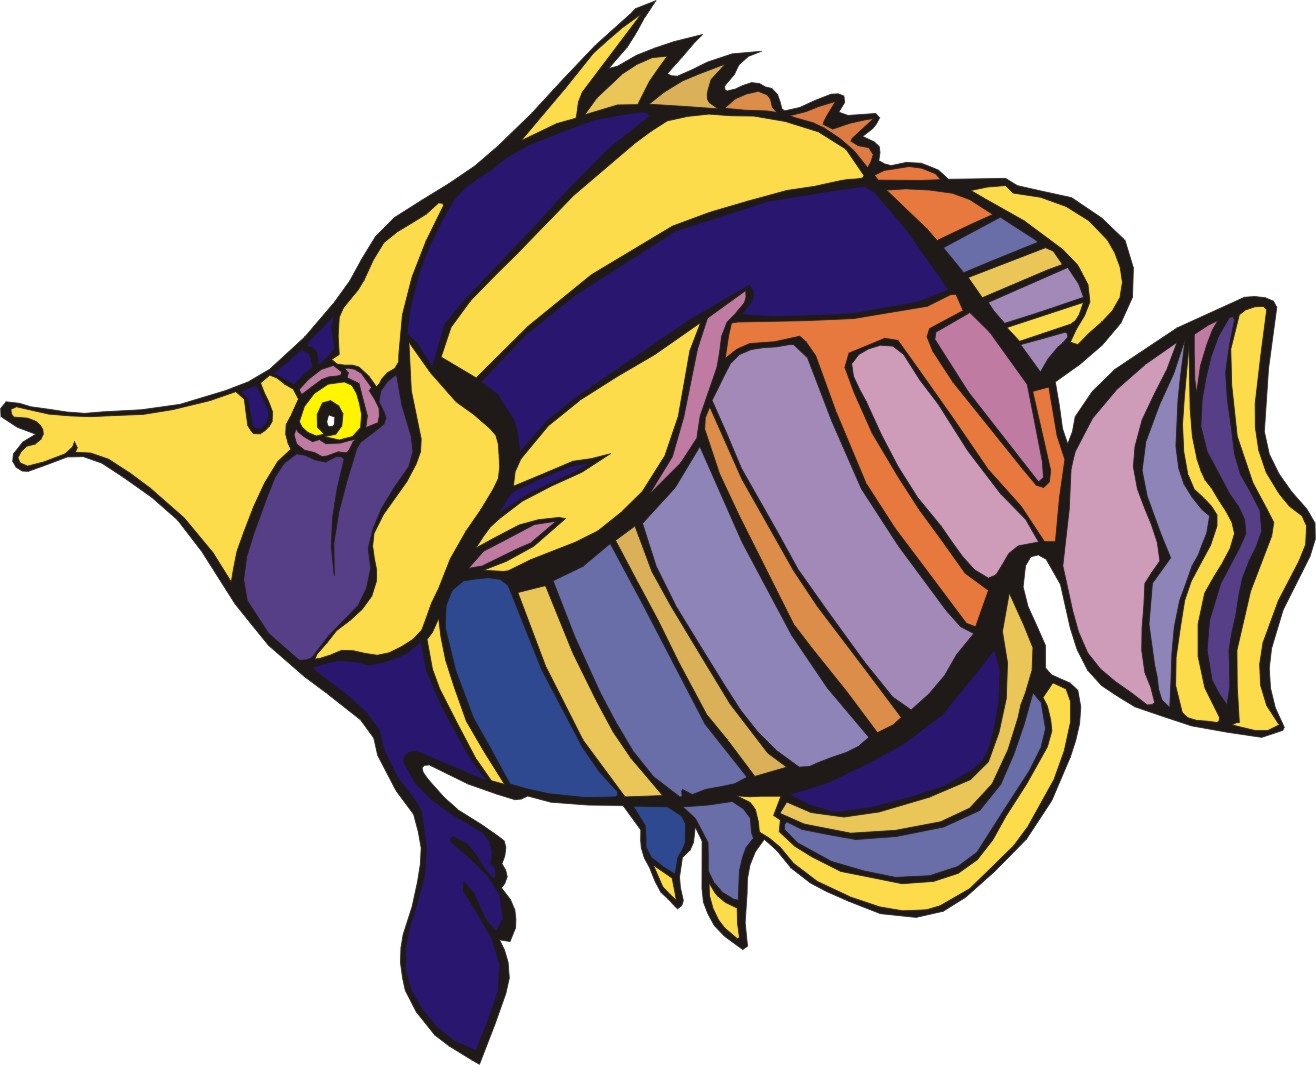 Fish Cartoon Drawings - ClipArt Best